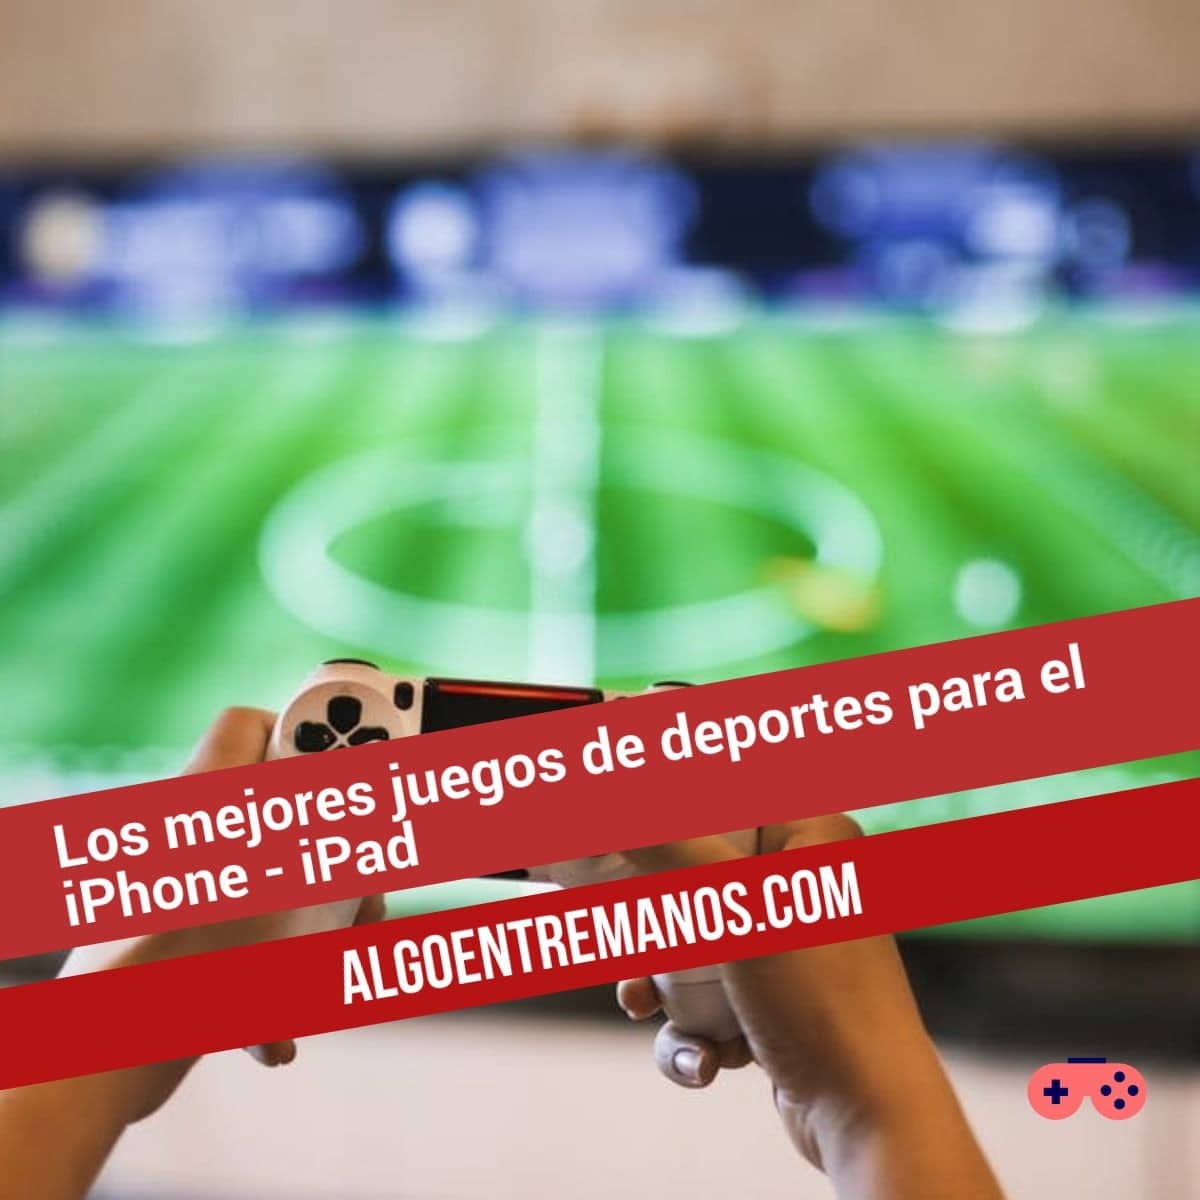 Los mejores juegos de deportes para el iPhone - iPad